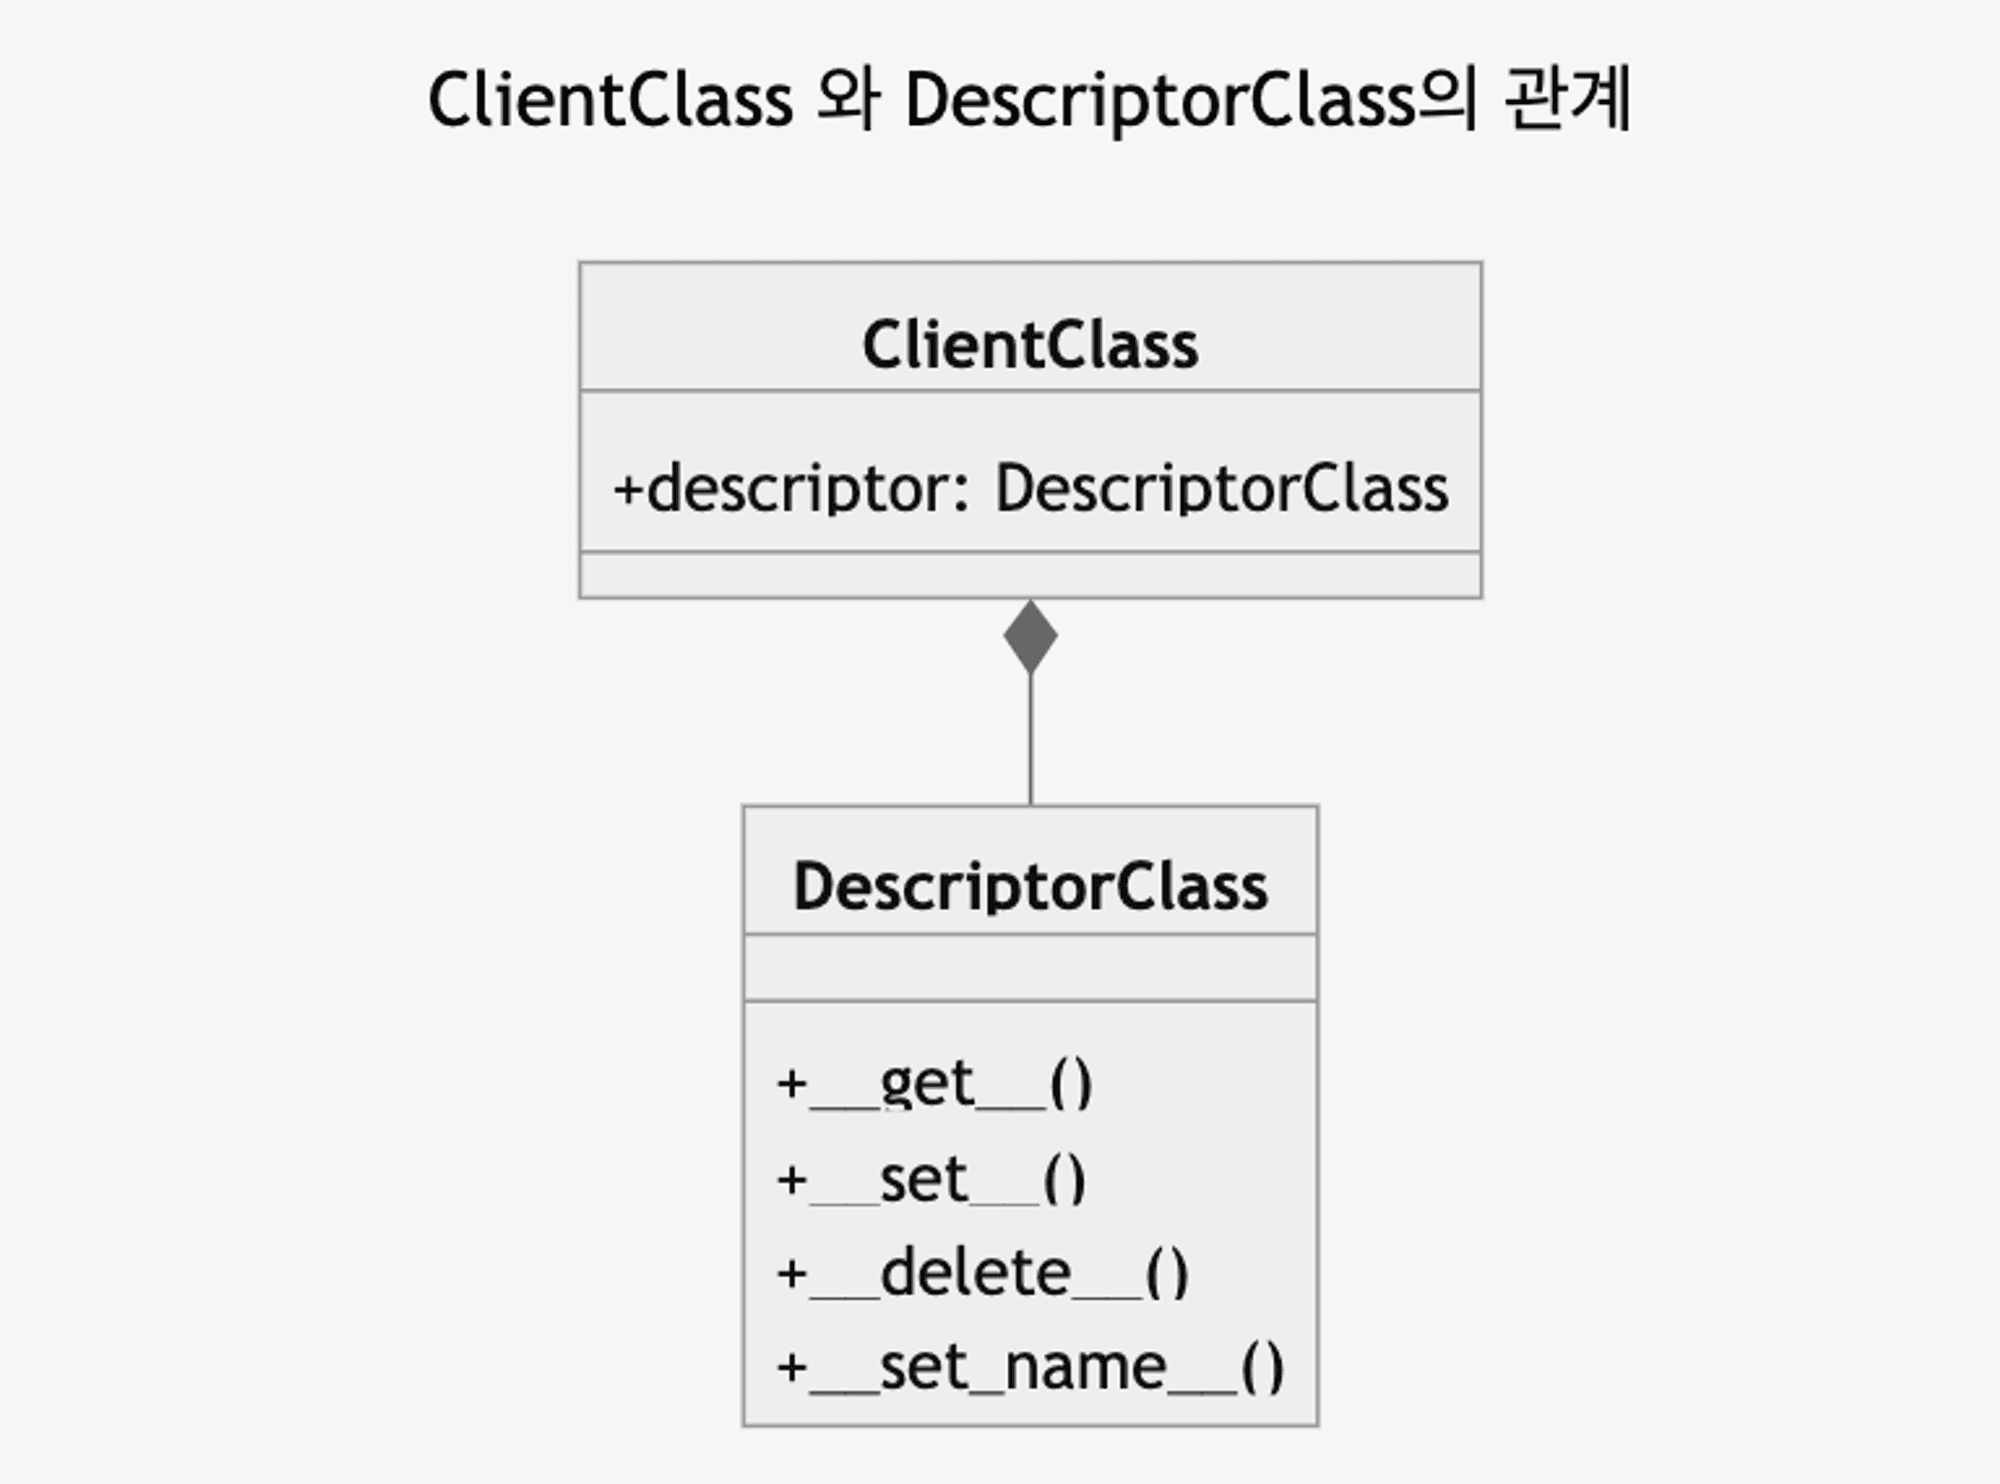 ClientClass와 Descriptor의 관계(Composition(구성) 관계: 차와 바퀴의 관계)